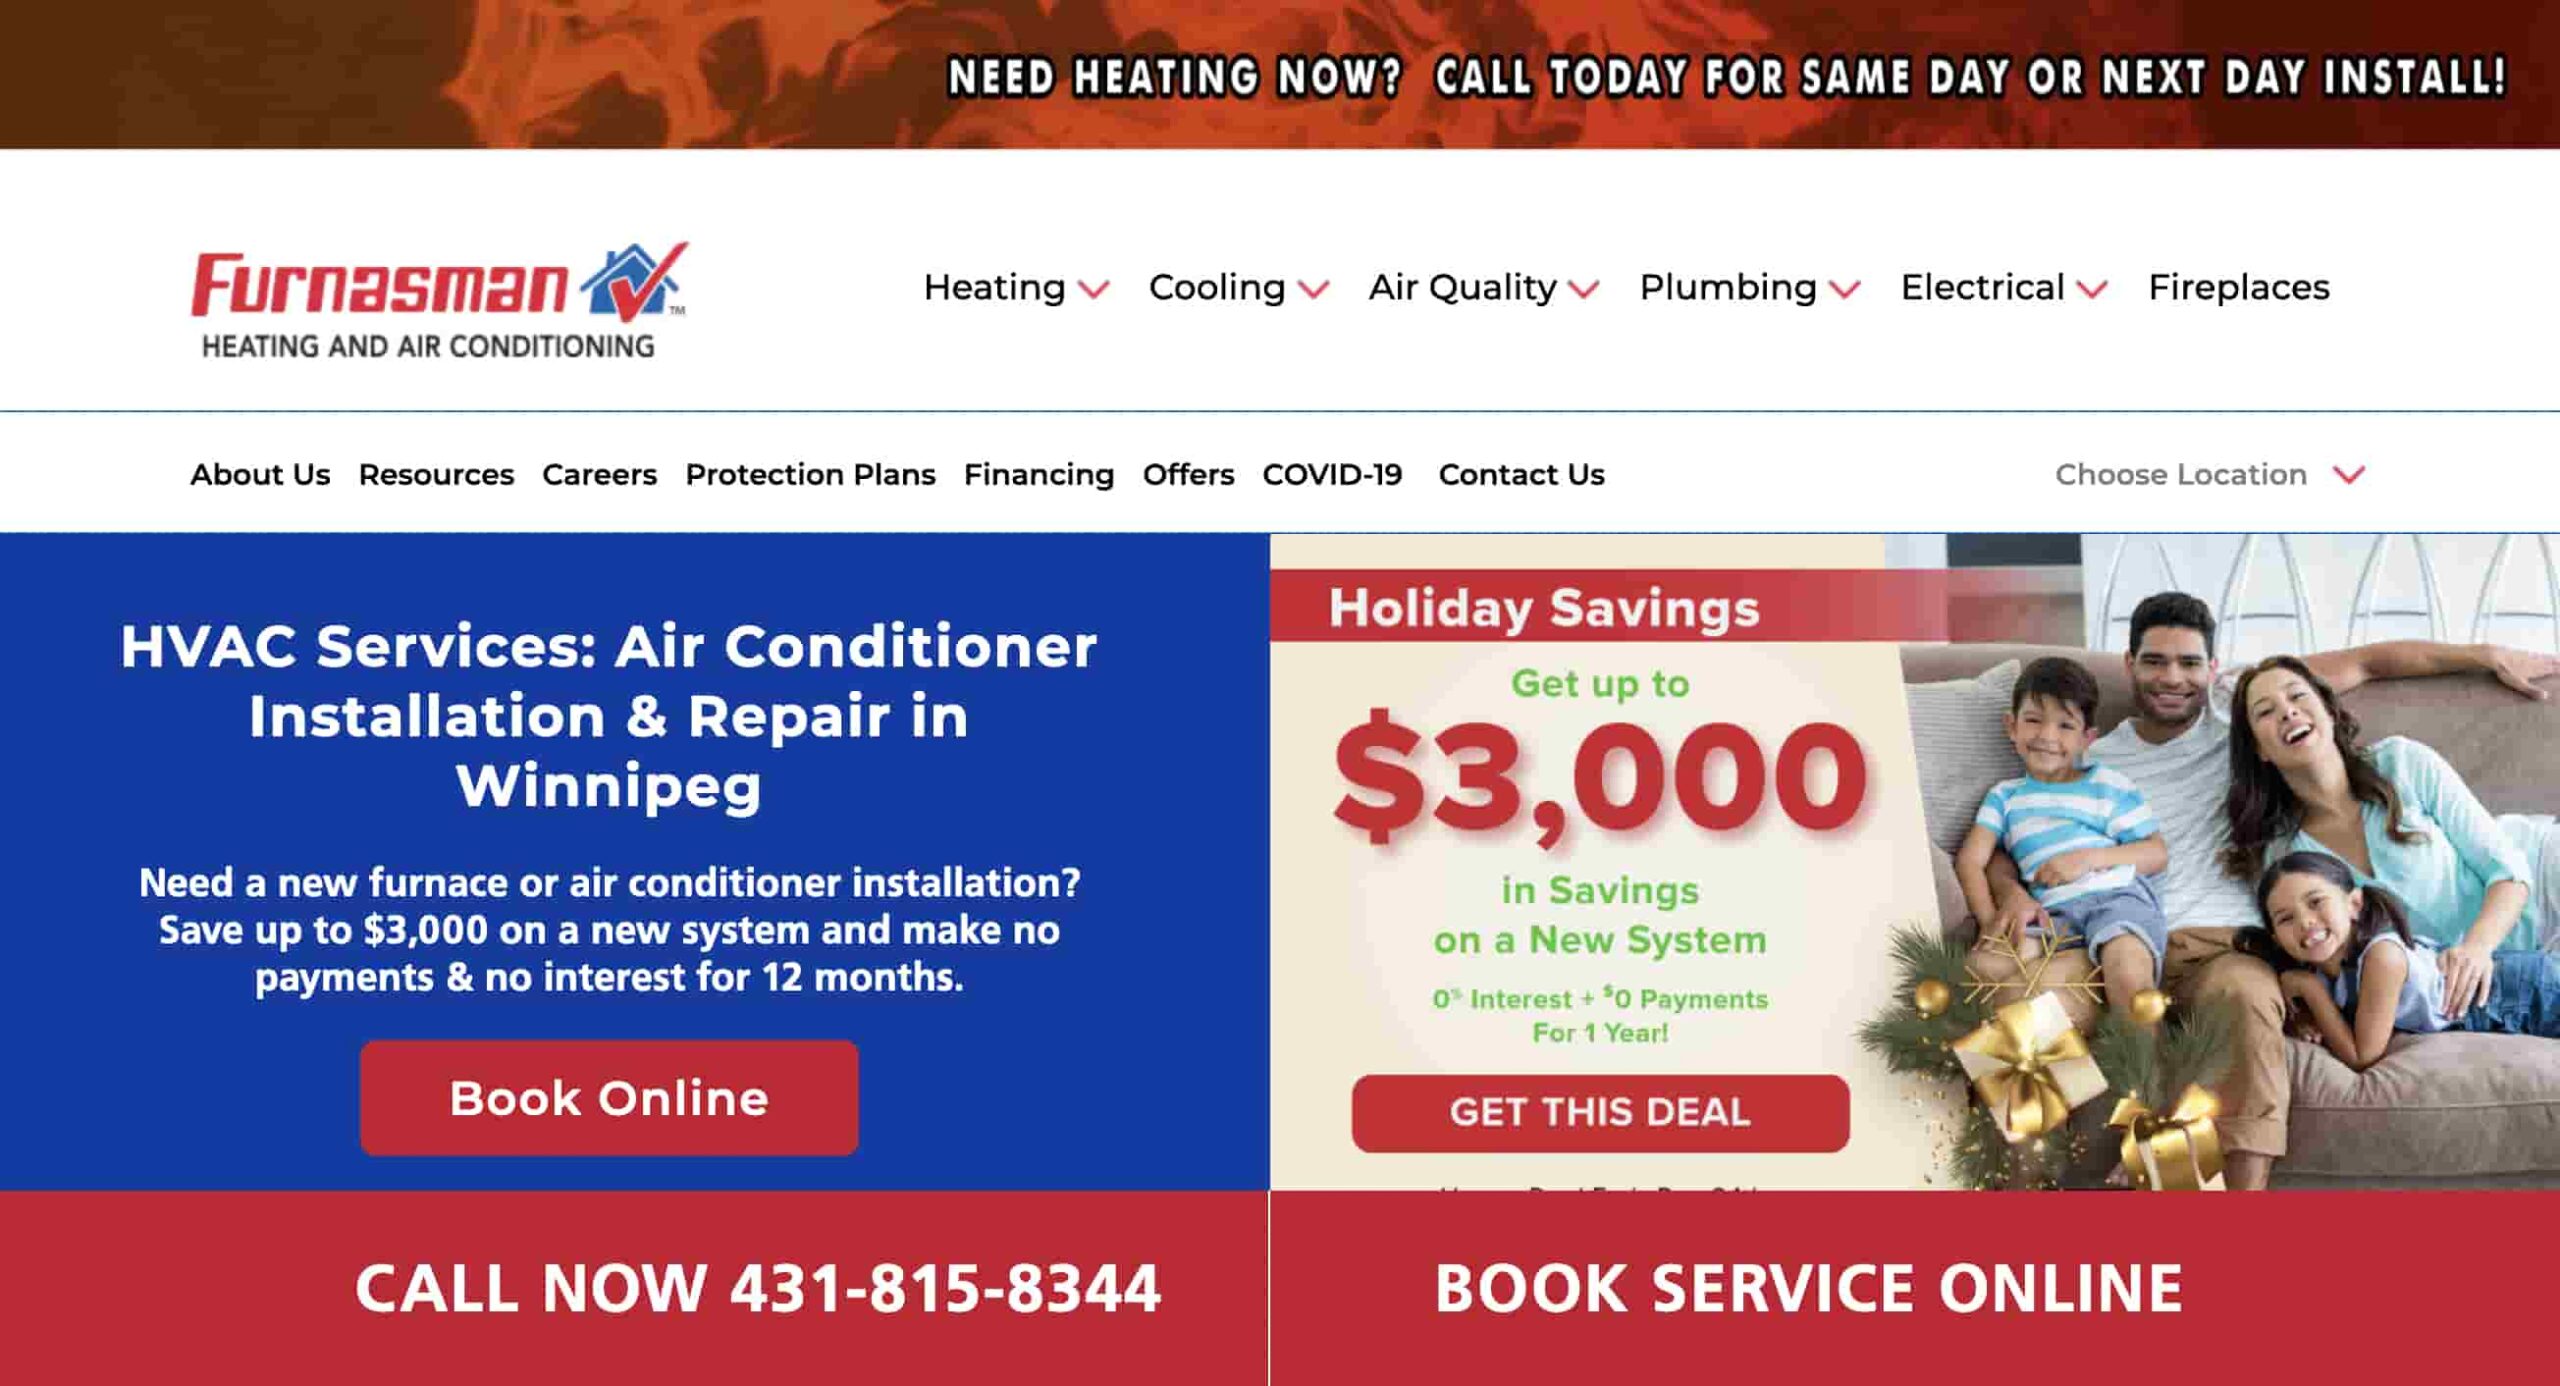 Furnasman Heating and Air Conditioning